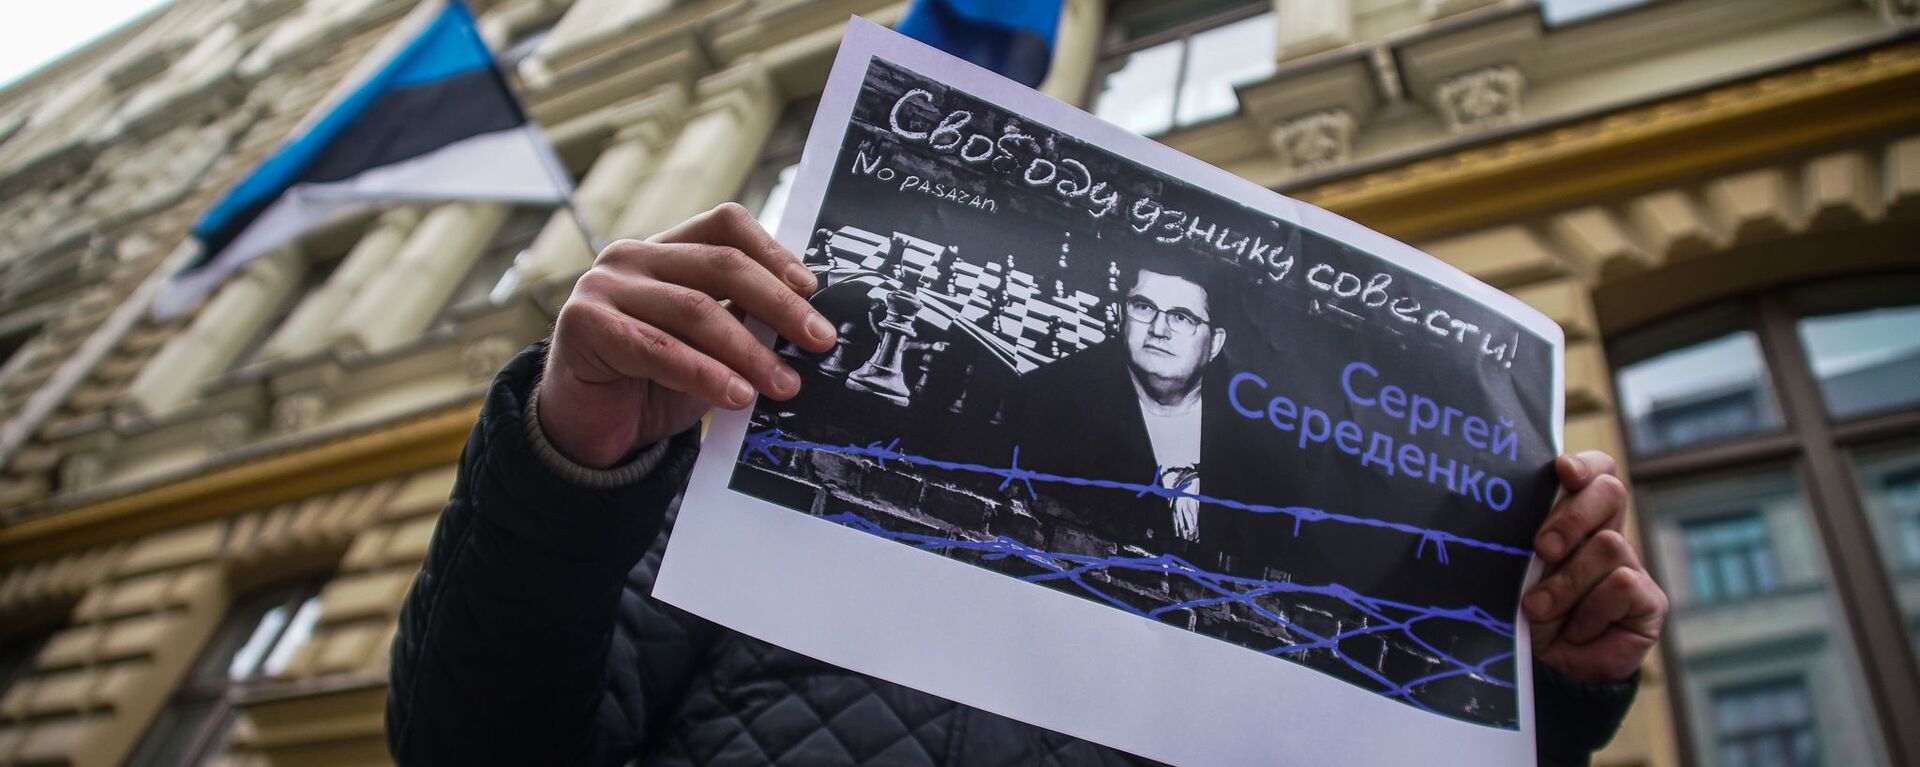 На пикет к посольству Эстонии в Риге активисты принесли плакаты с требованием Свободу узнику совести! Сергею Середенко  - Sputnik Латвия, 1920, 22.10.2021